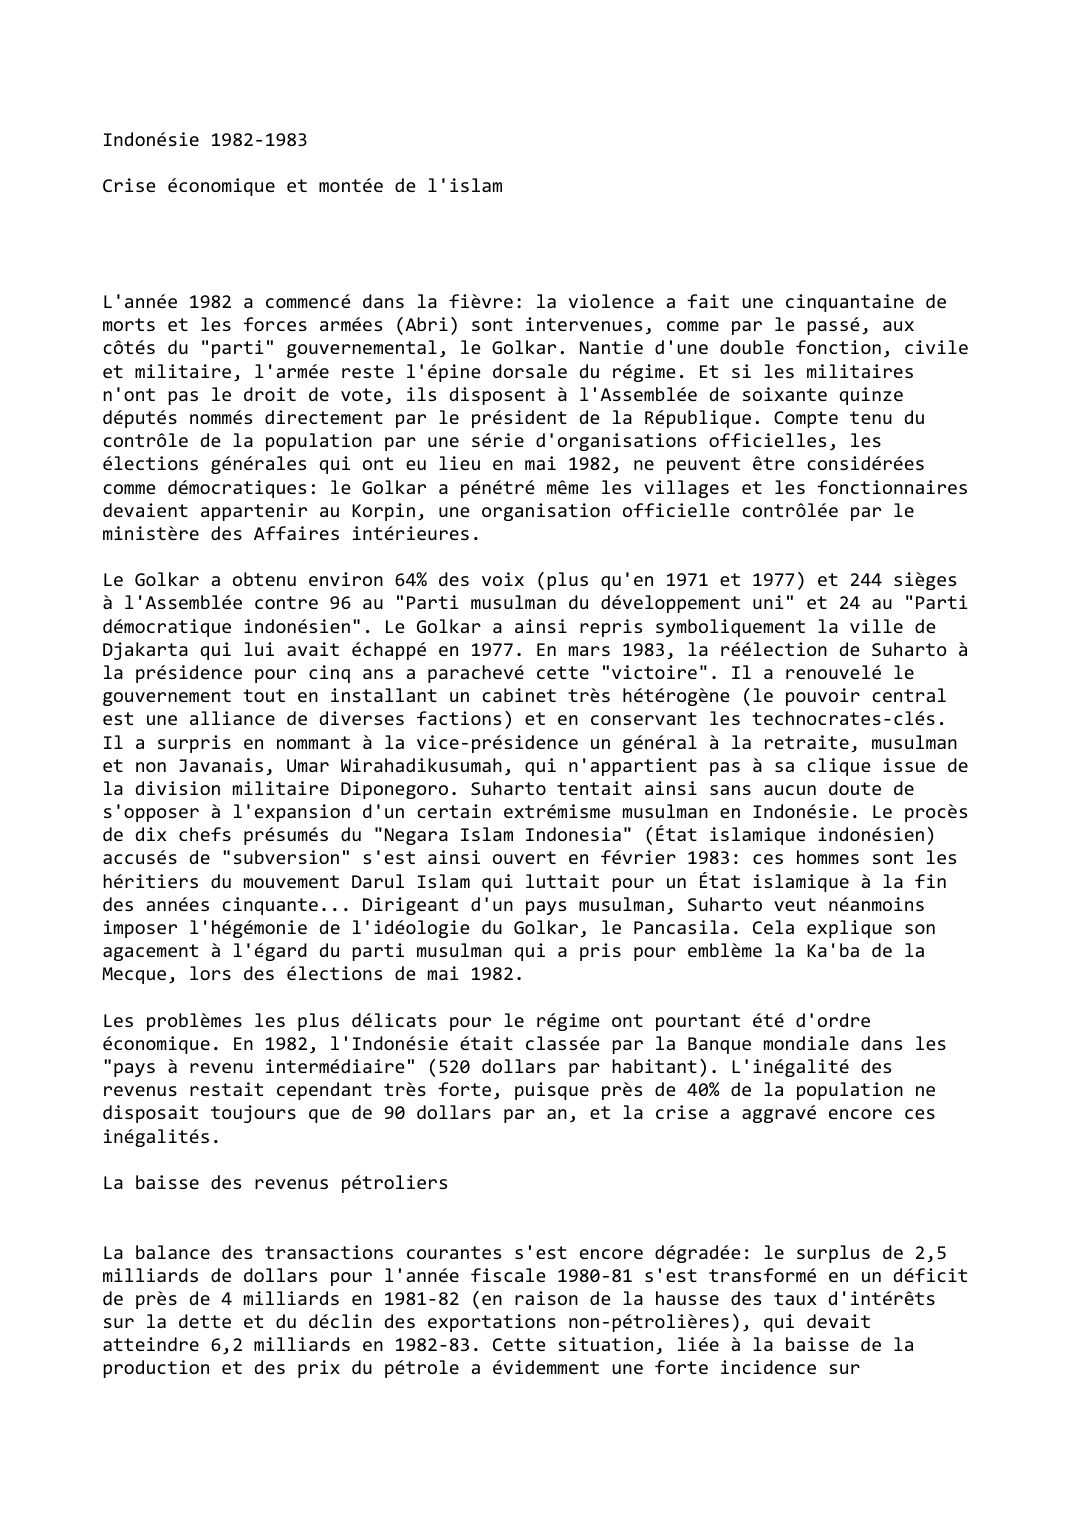 Prévisualisation du document Indonésie (1982-1983)

Crise économique et montée de l'islam